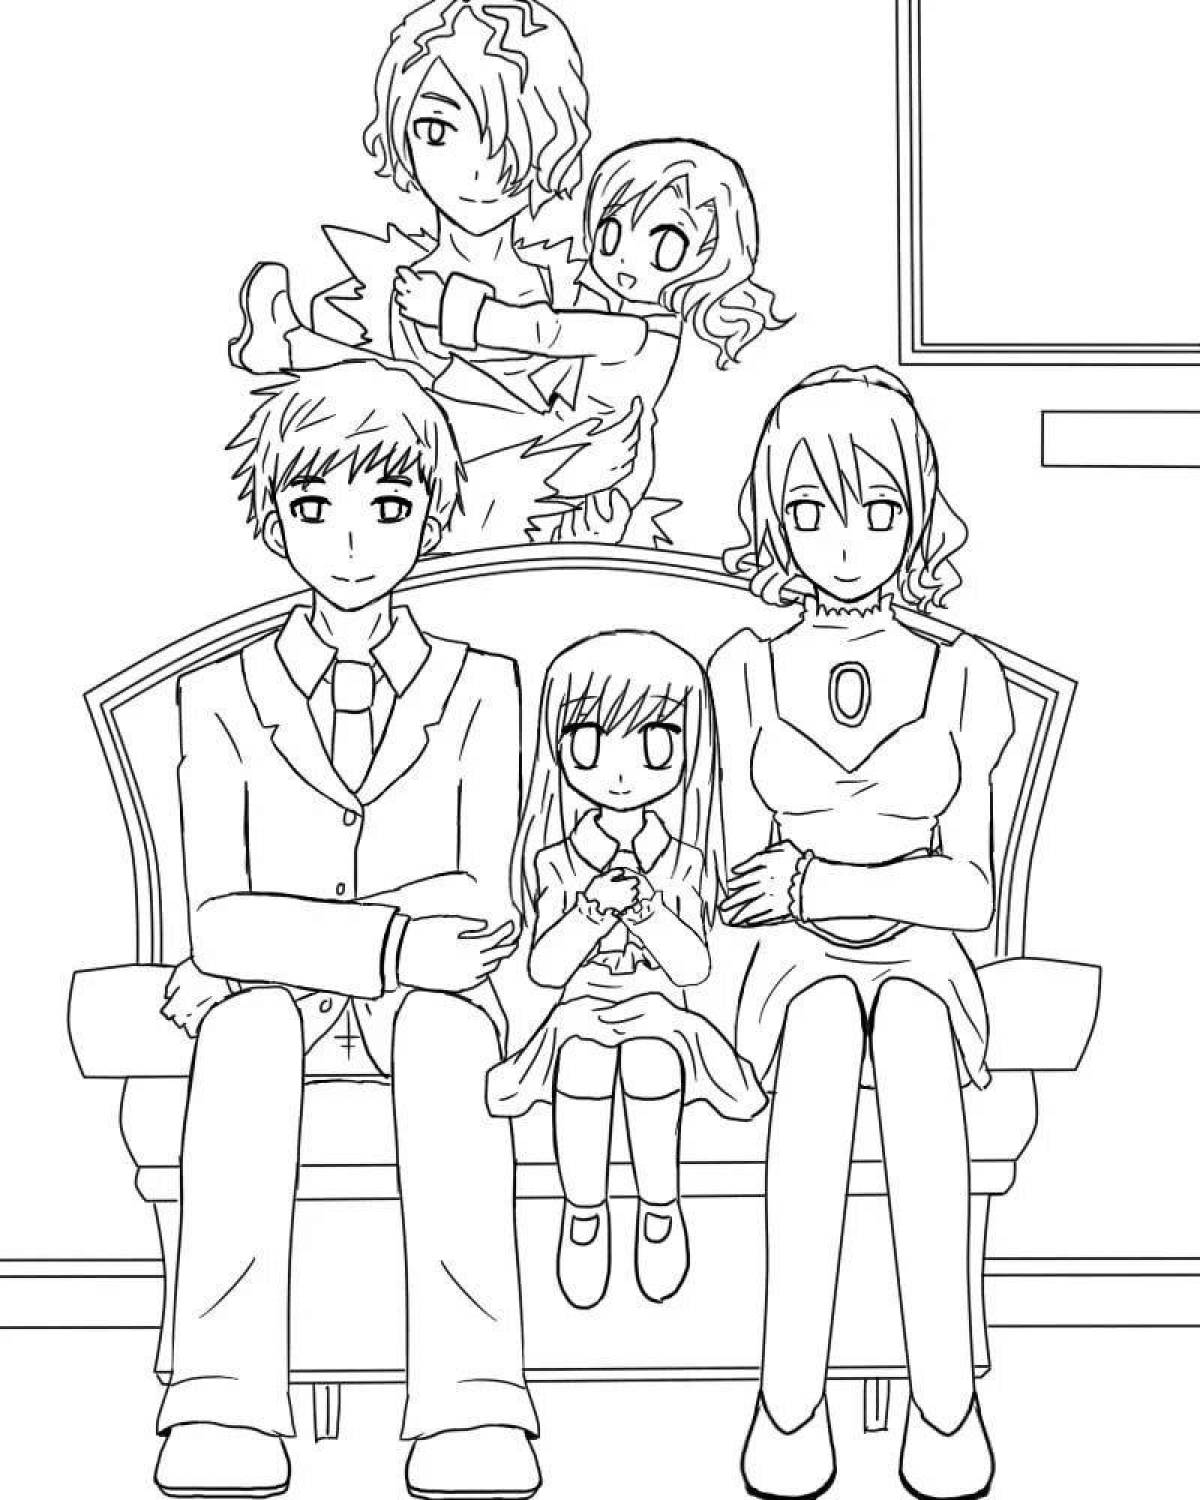 Невероятная раскраска аниме-шпионской семьи